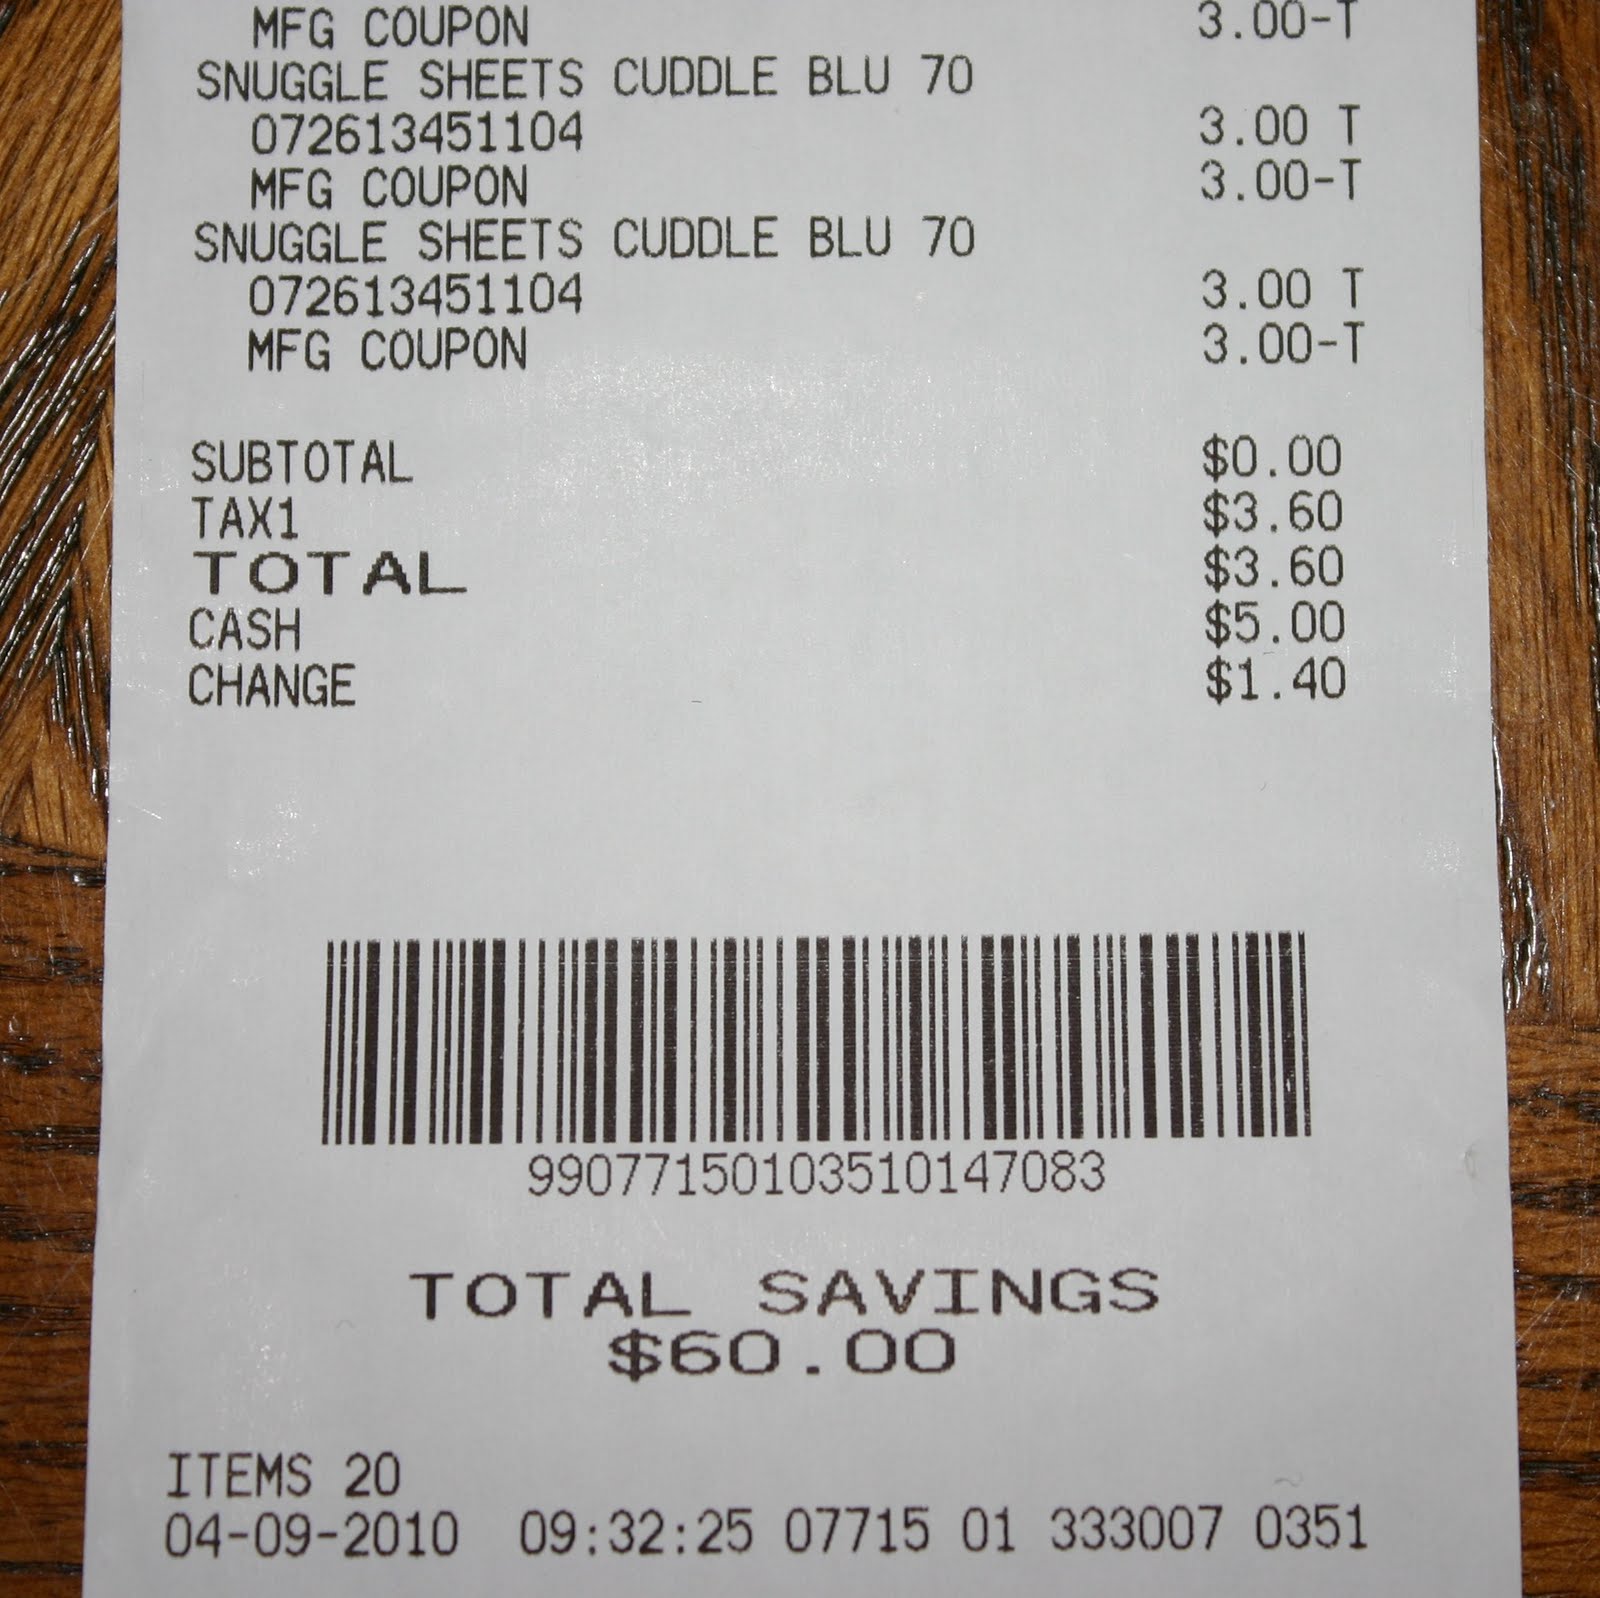 expressexpense-custom-receipt-maker-online-receipt-template-tool